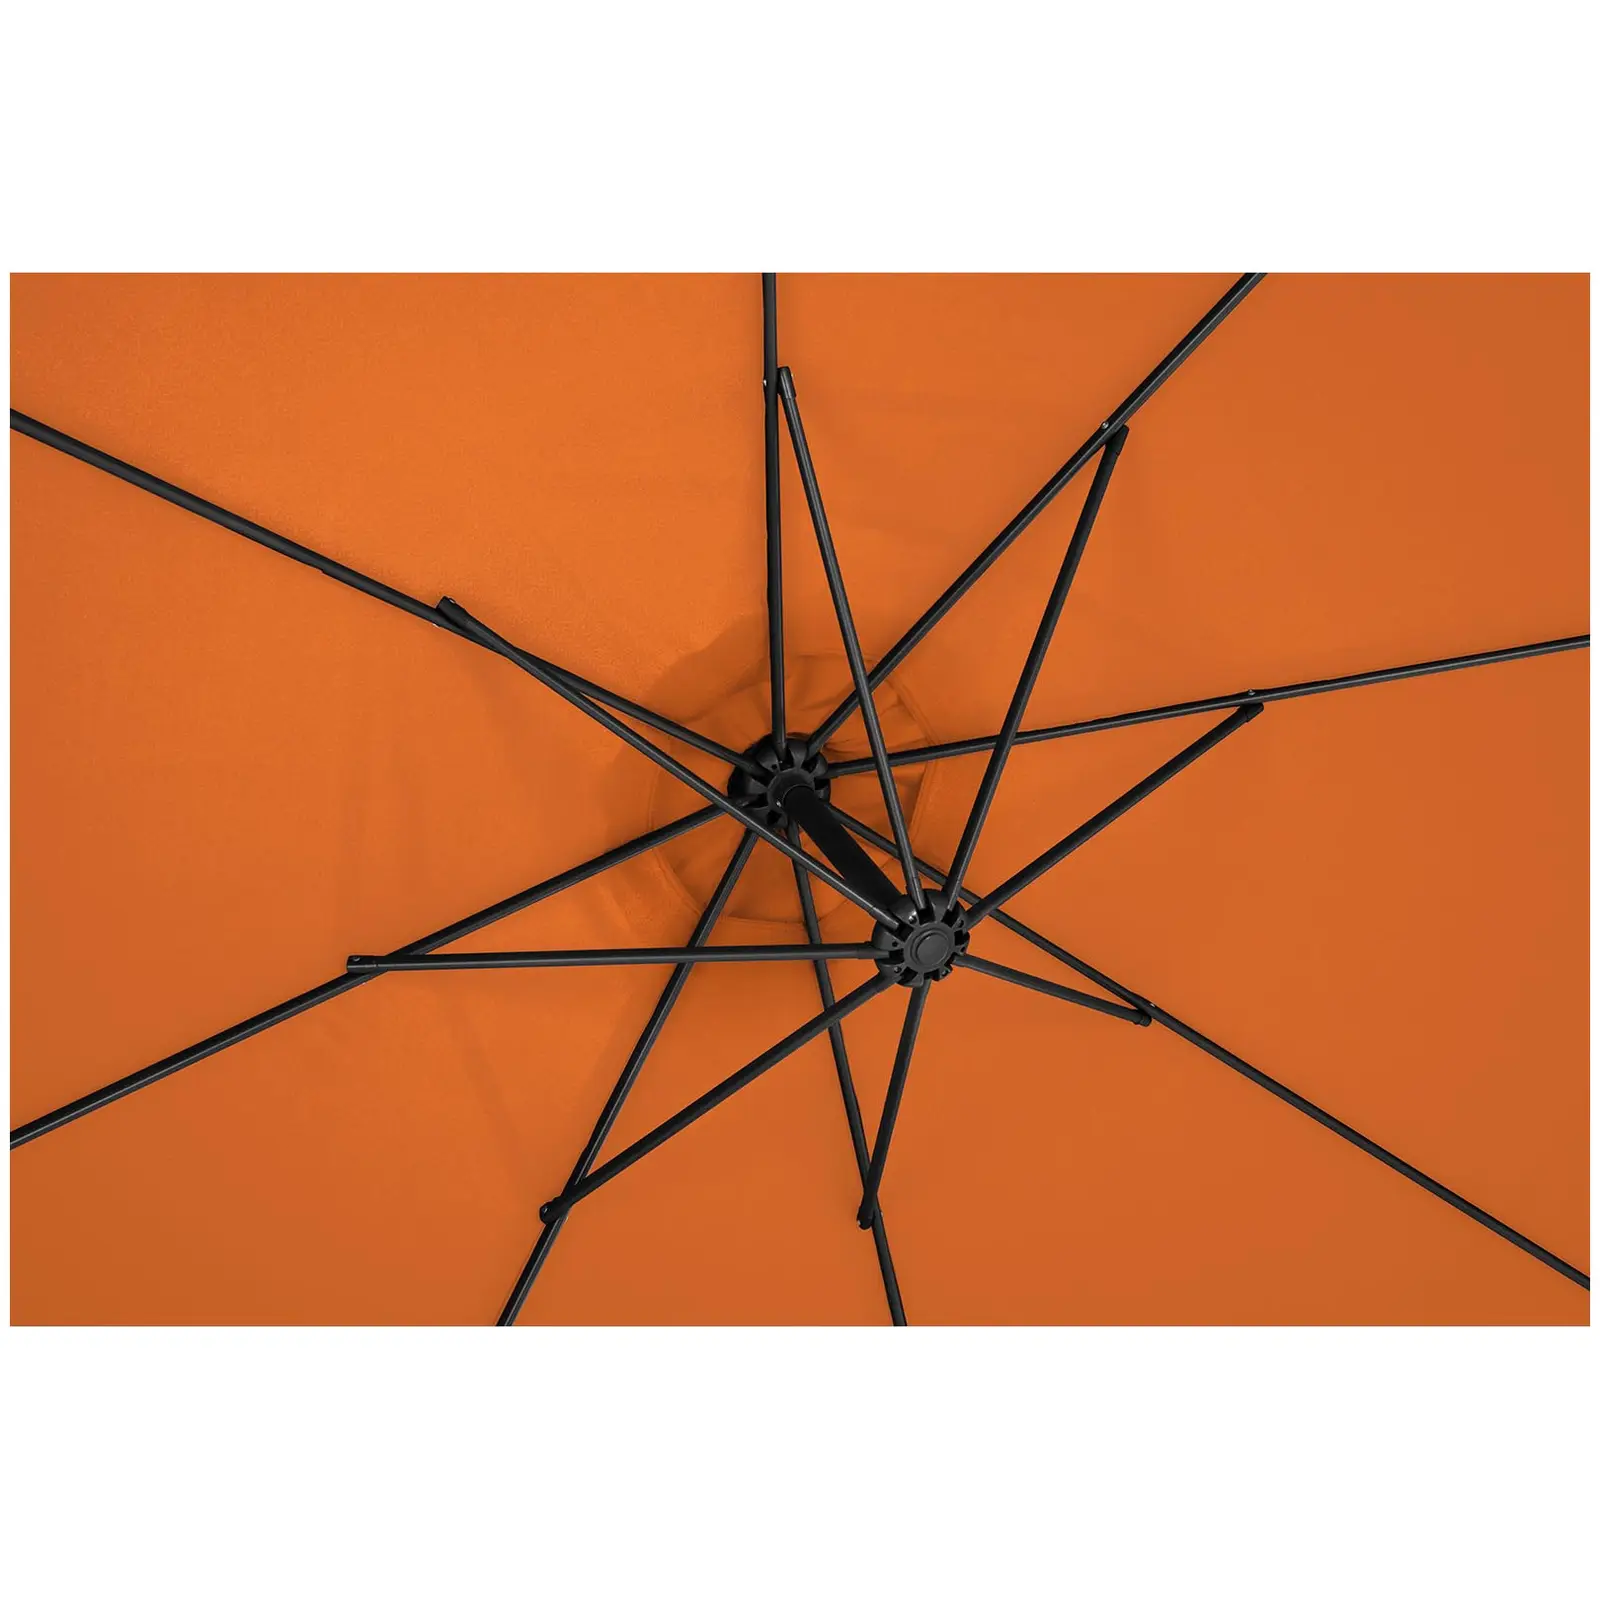 Factory second Garden umbrella - orange - round - Ø 300 cm - tiltable